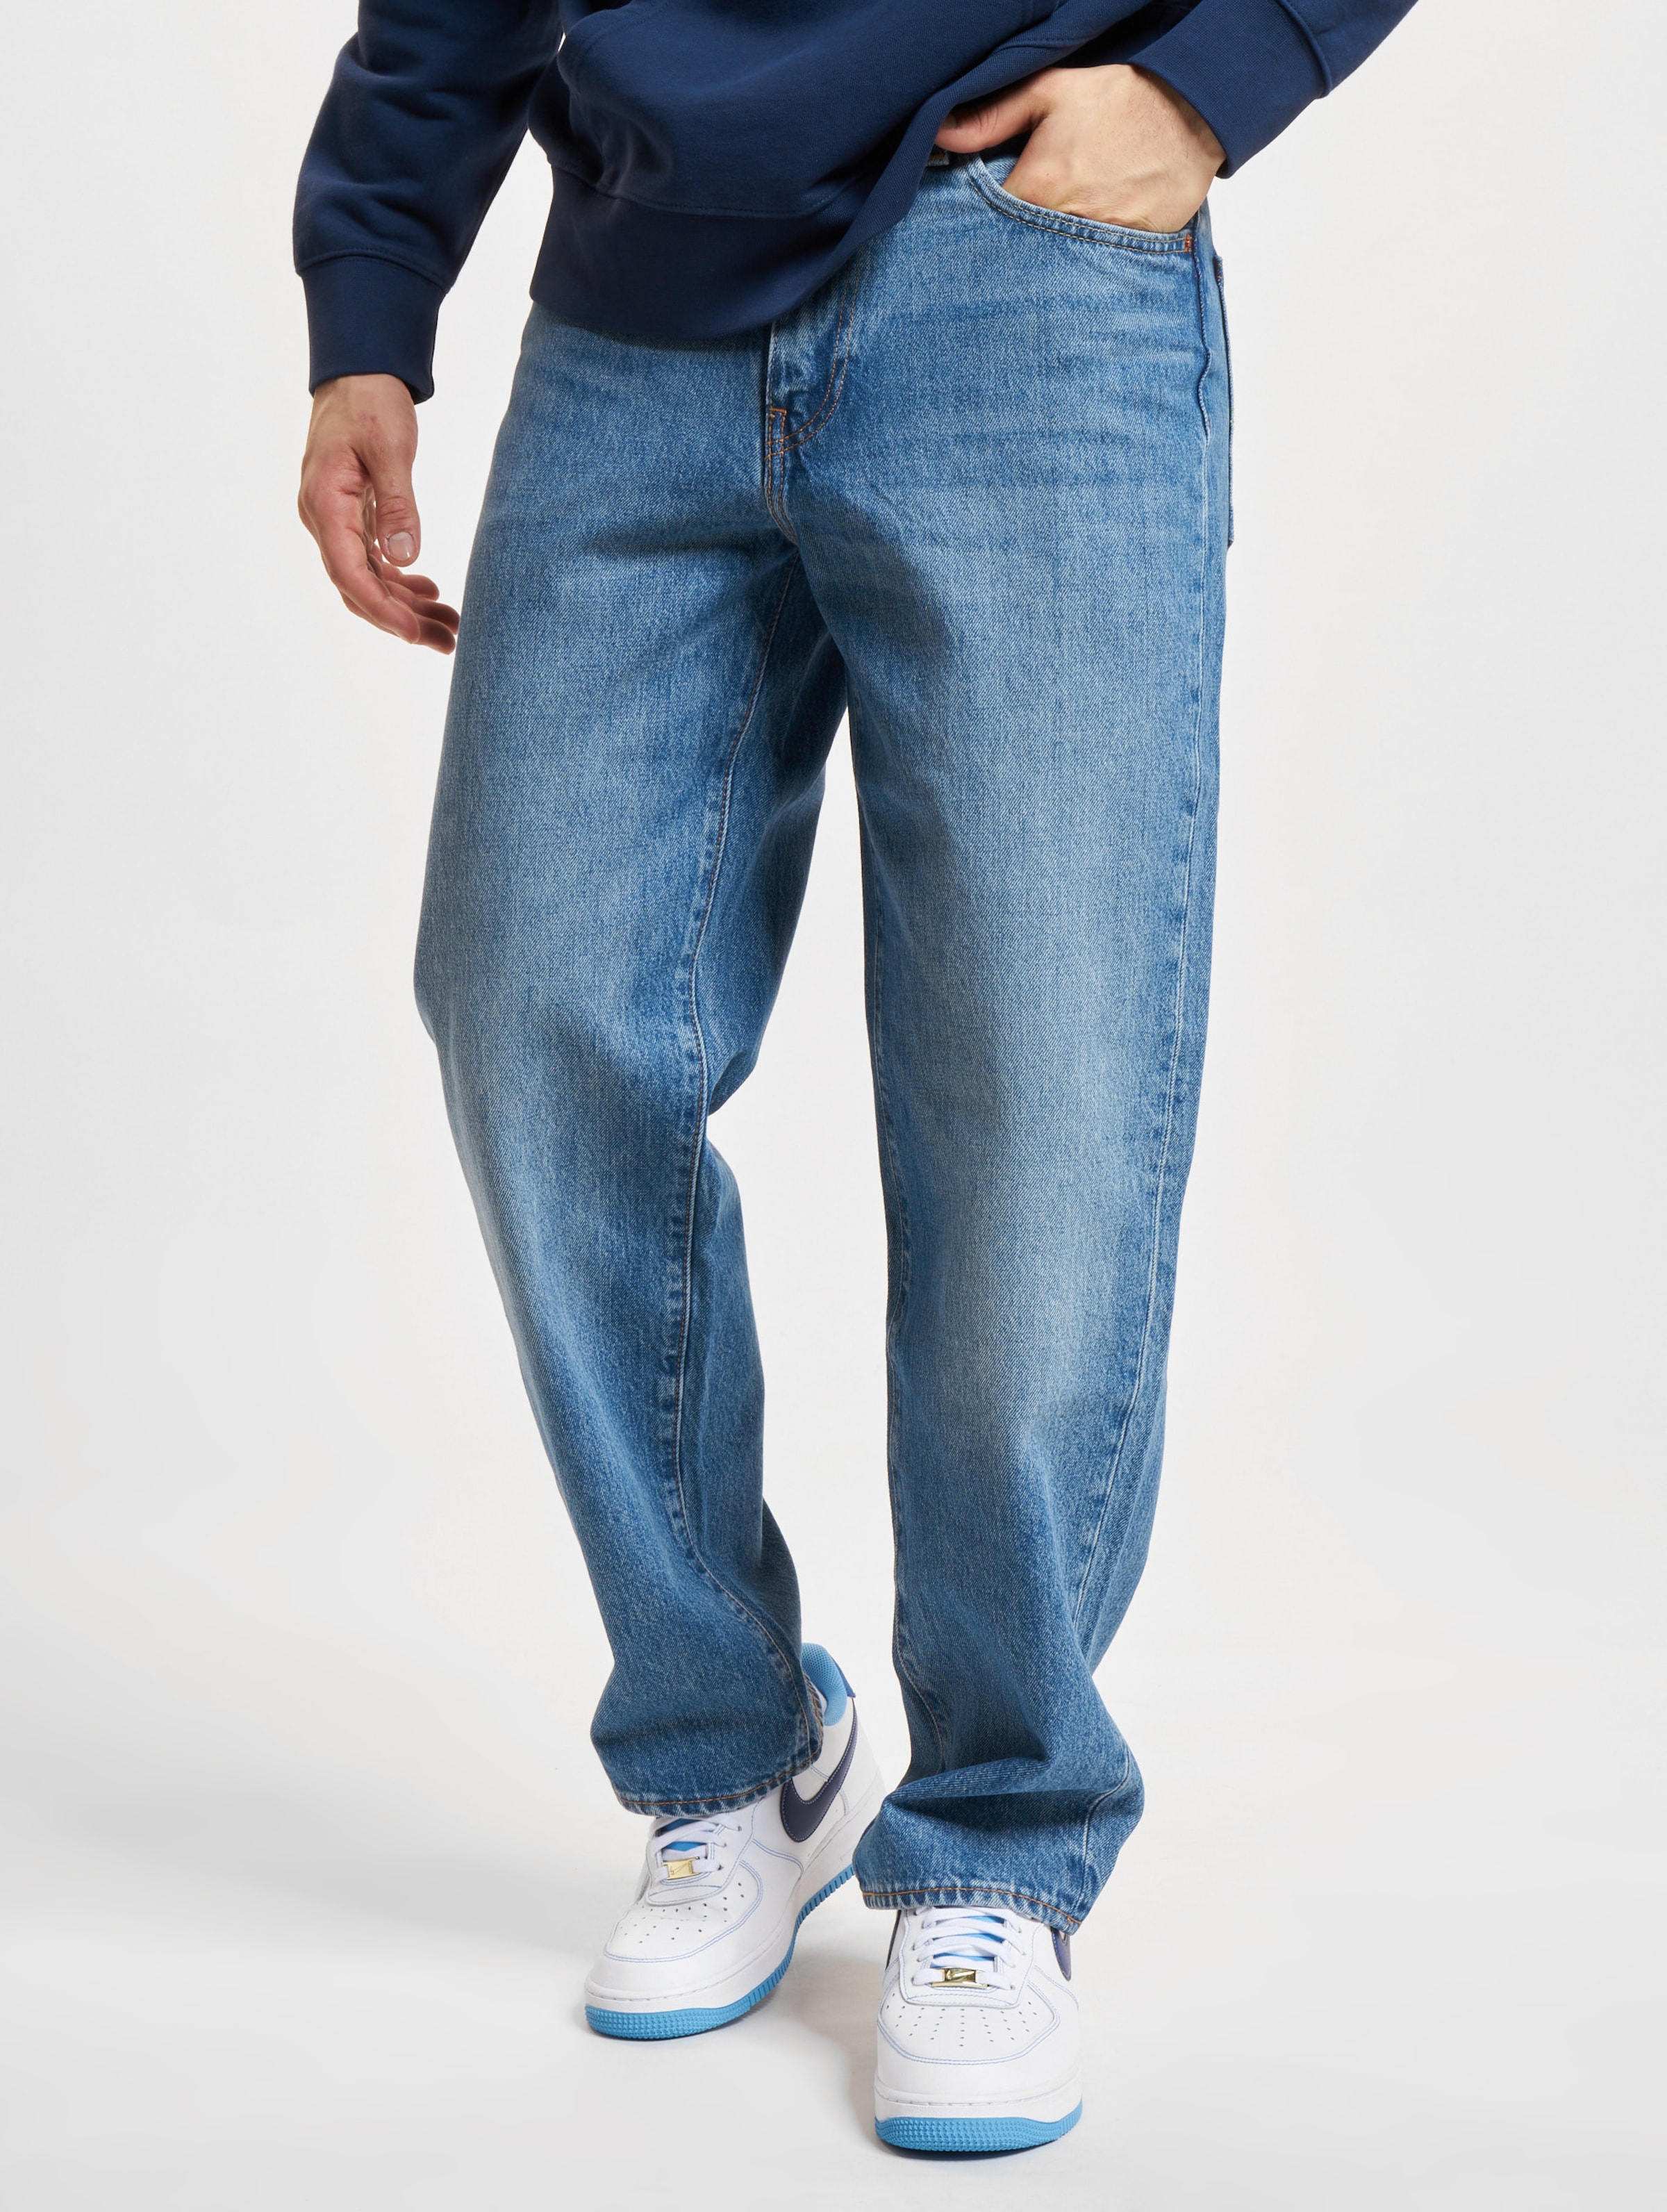 Levi's 568 Stay Loose Fit Jeans Mannen op kleur blauw, Maat 3632